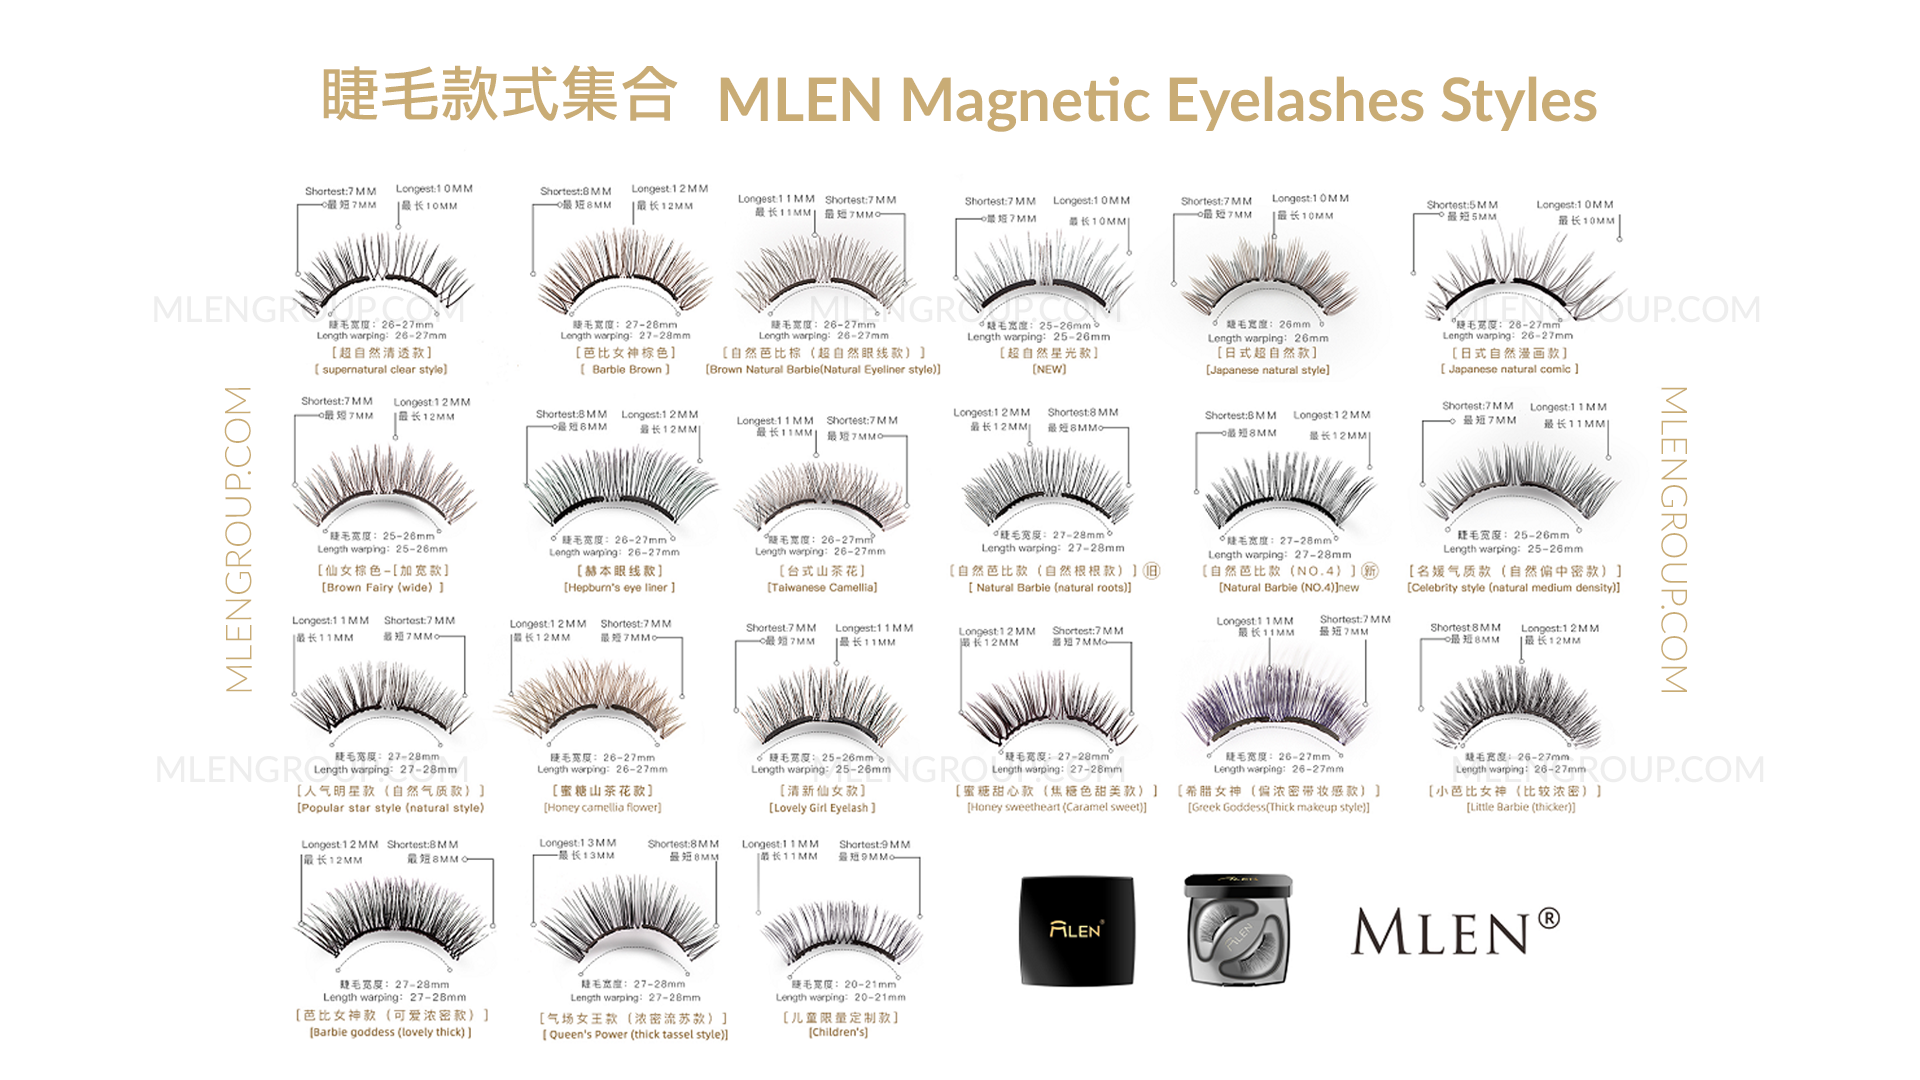 mlen group mlen magnetic eyelashes styles